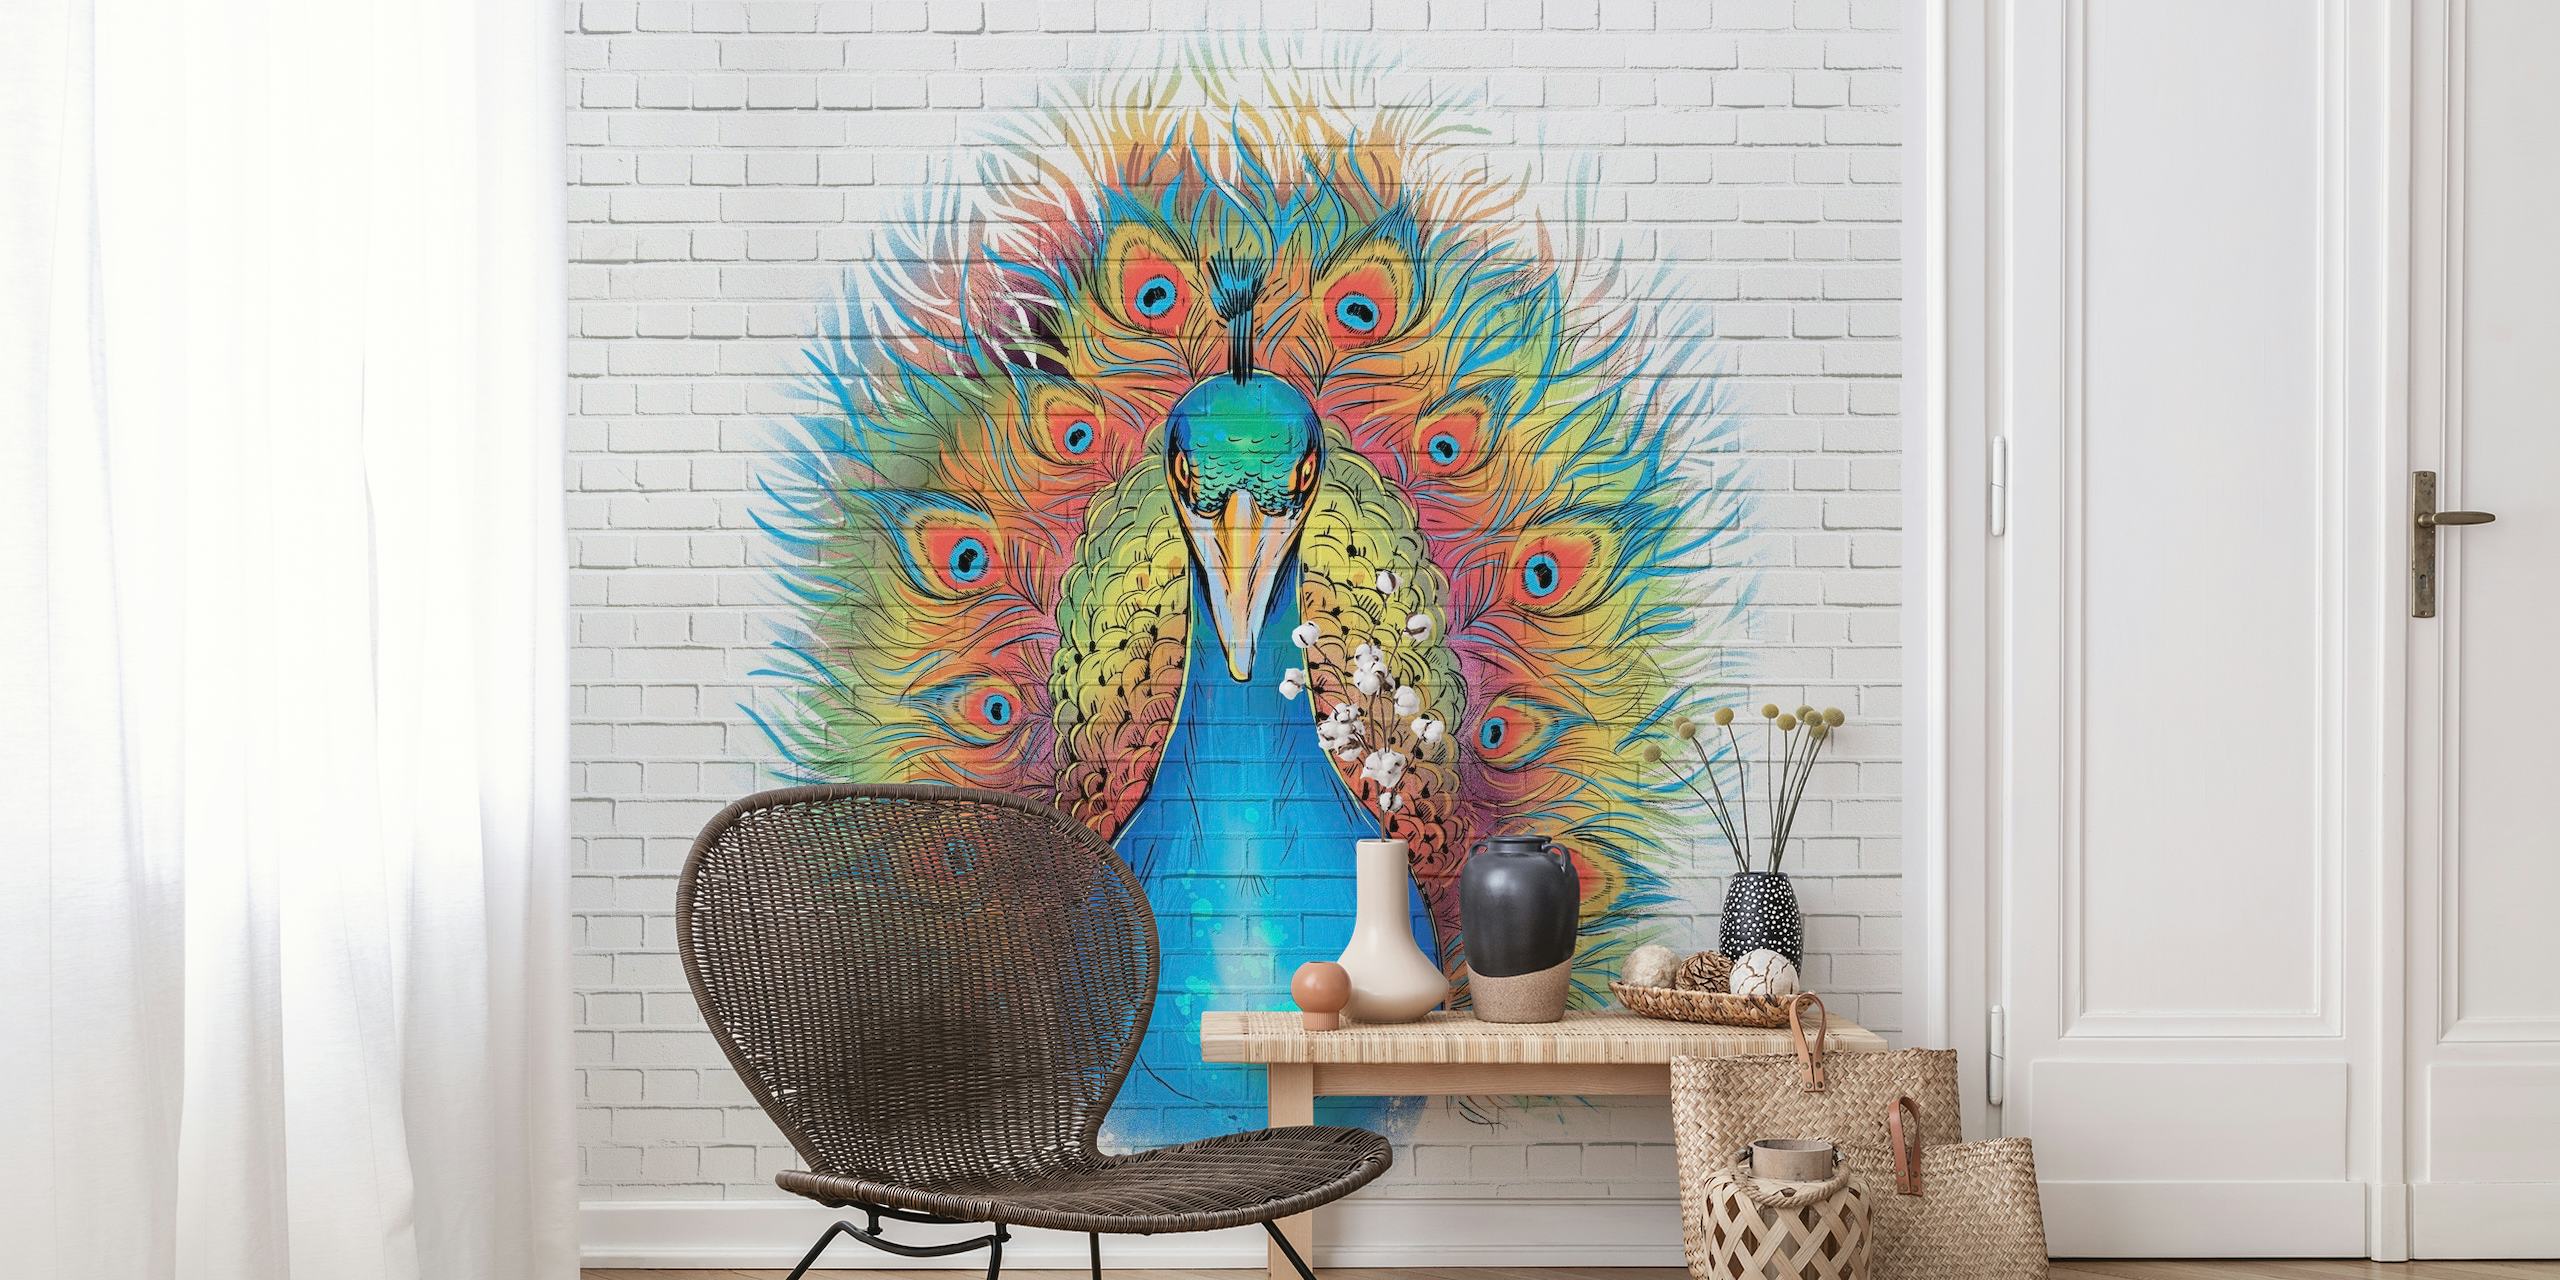 Op straatkunst geïnspireerde Angry Peacock Graffiti-muurschildering met levendige kleuren op een witte bakstenen achtergrond